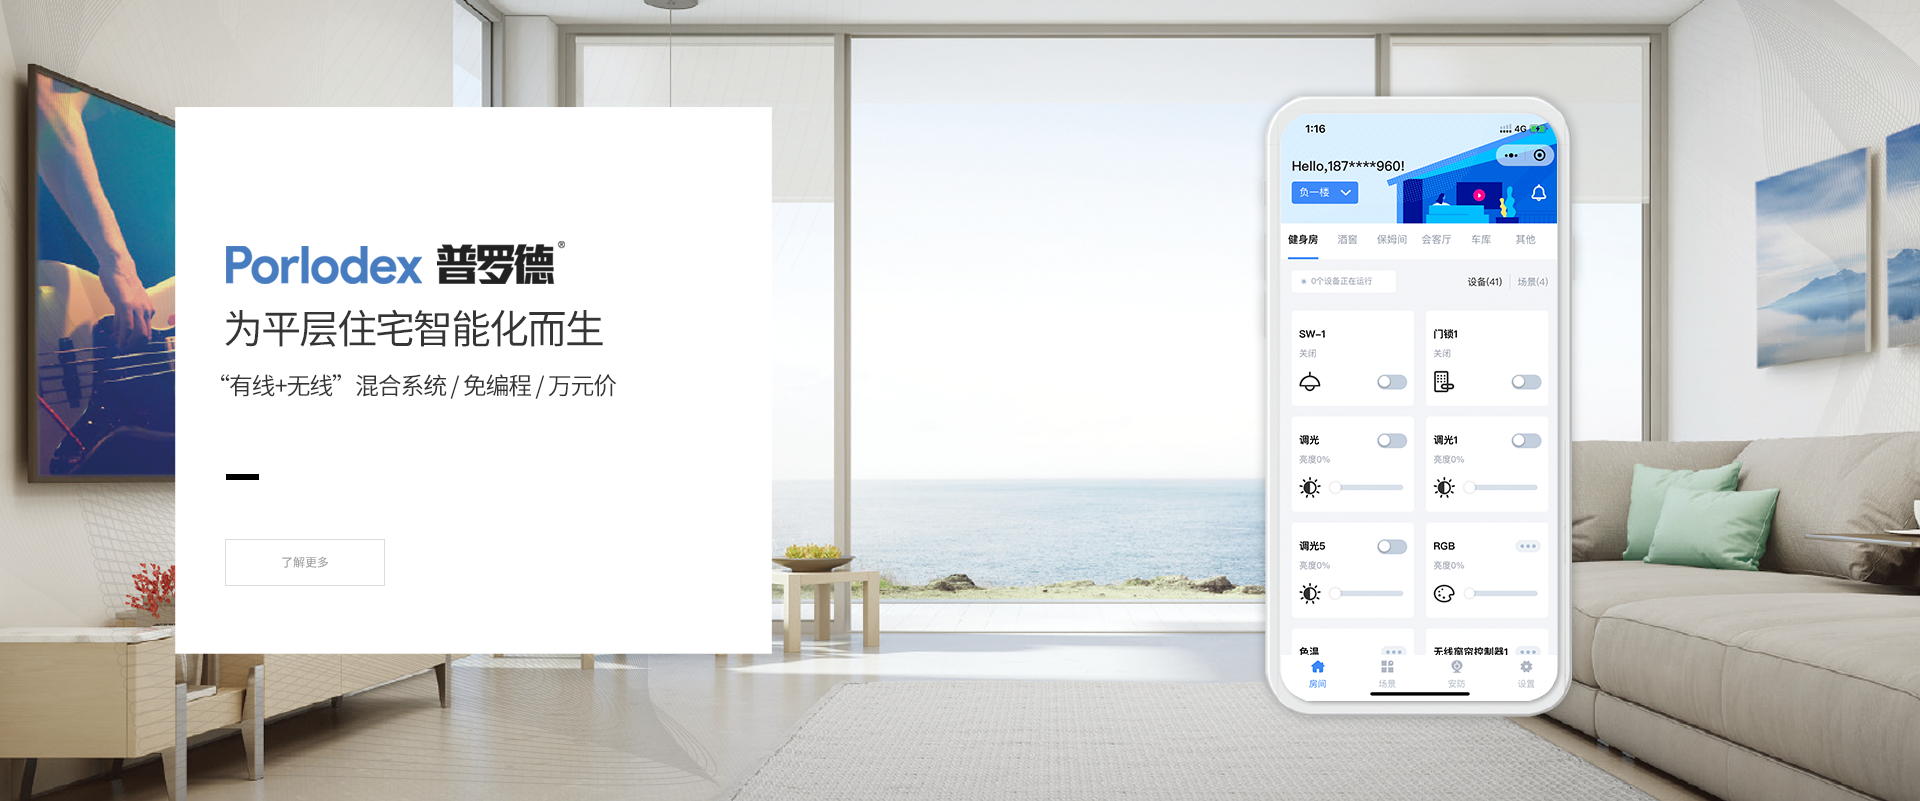 OB欧宝·(中国)官方网站智能发布智能家居子品牌